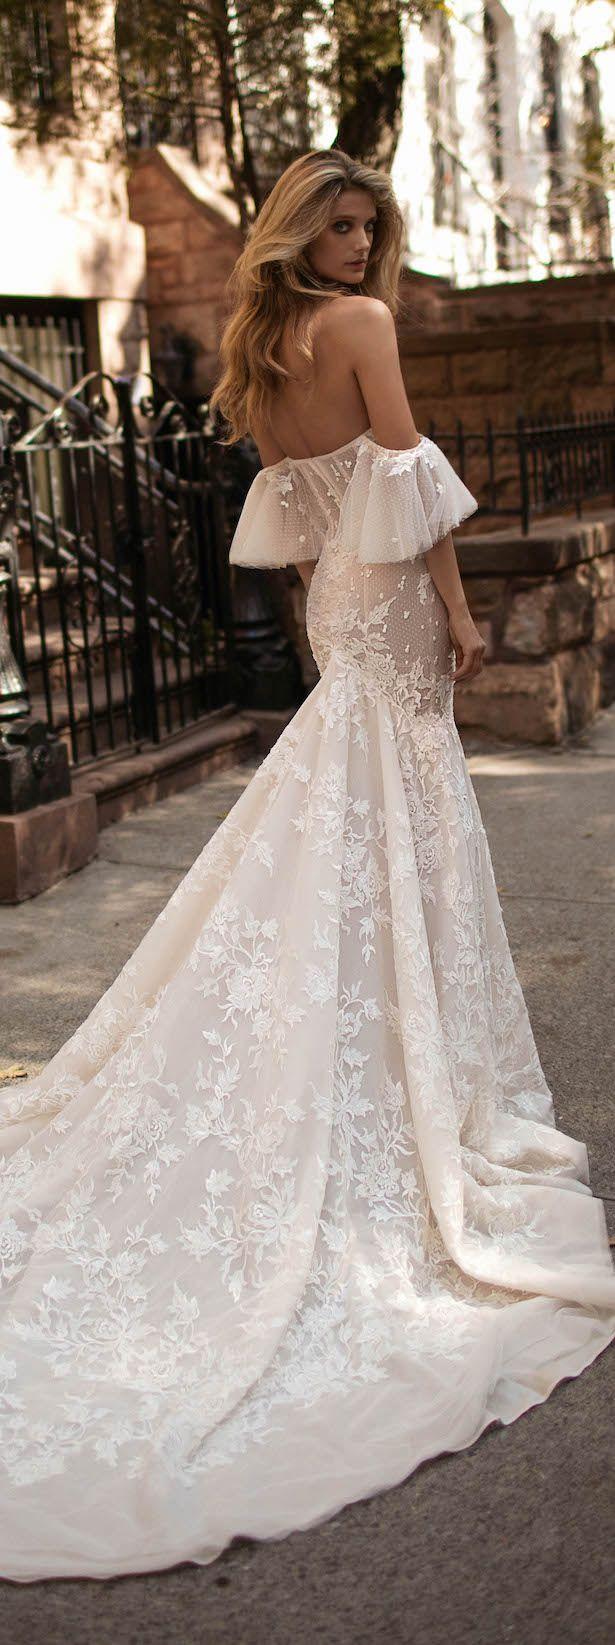 Wedding - Wedding Dress By Berta Bridal Fall 2017